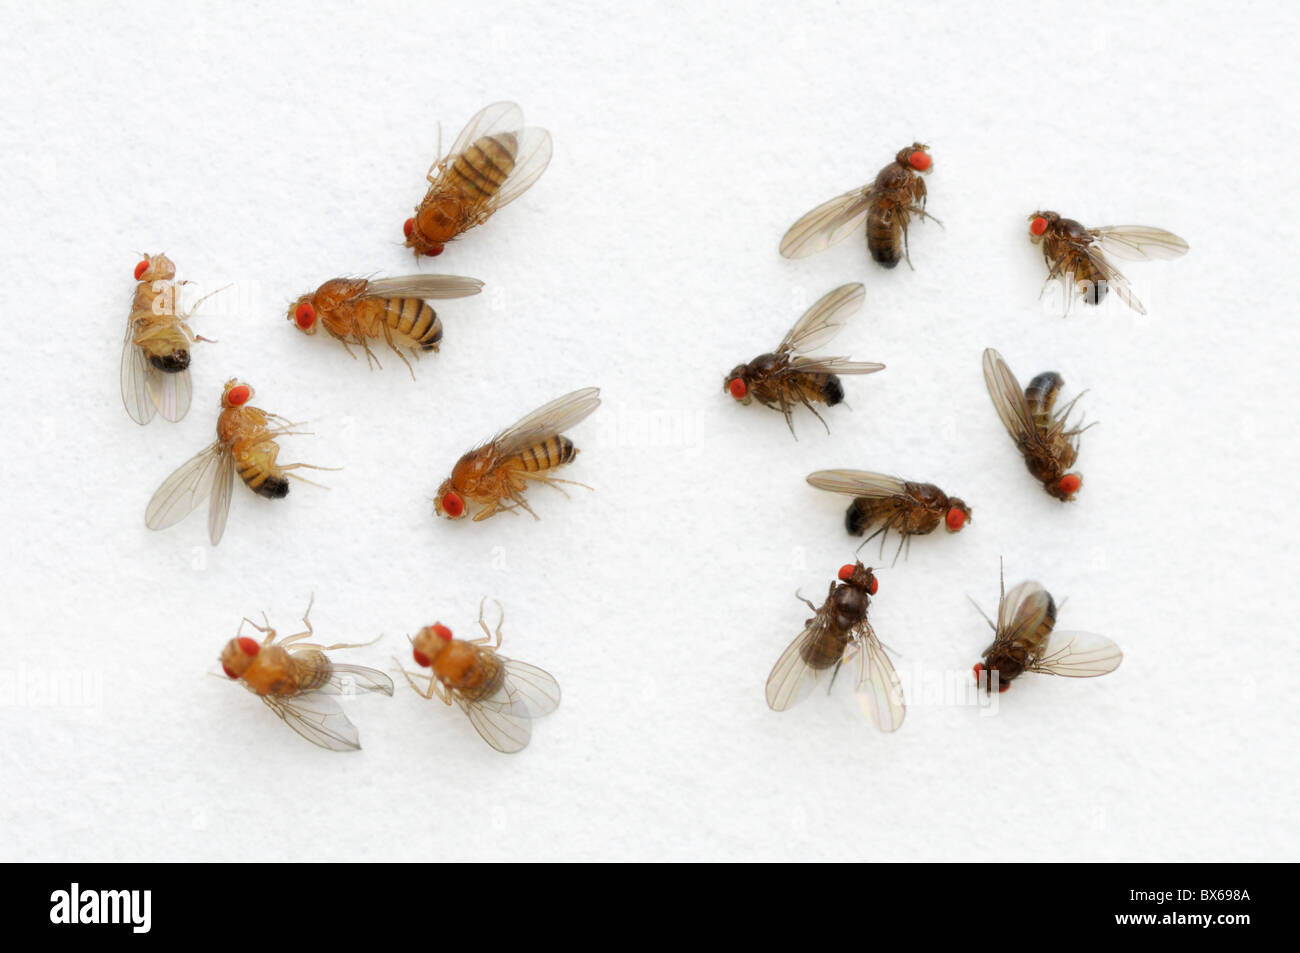 Fruit fly, Drosophila melanogaster, la variation de couleur. Sur la gauche sont des mouches de type sauvage, à droite, le corps de couleur ébène mutation. Banque D'Images